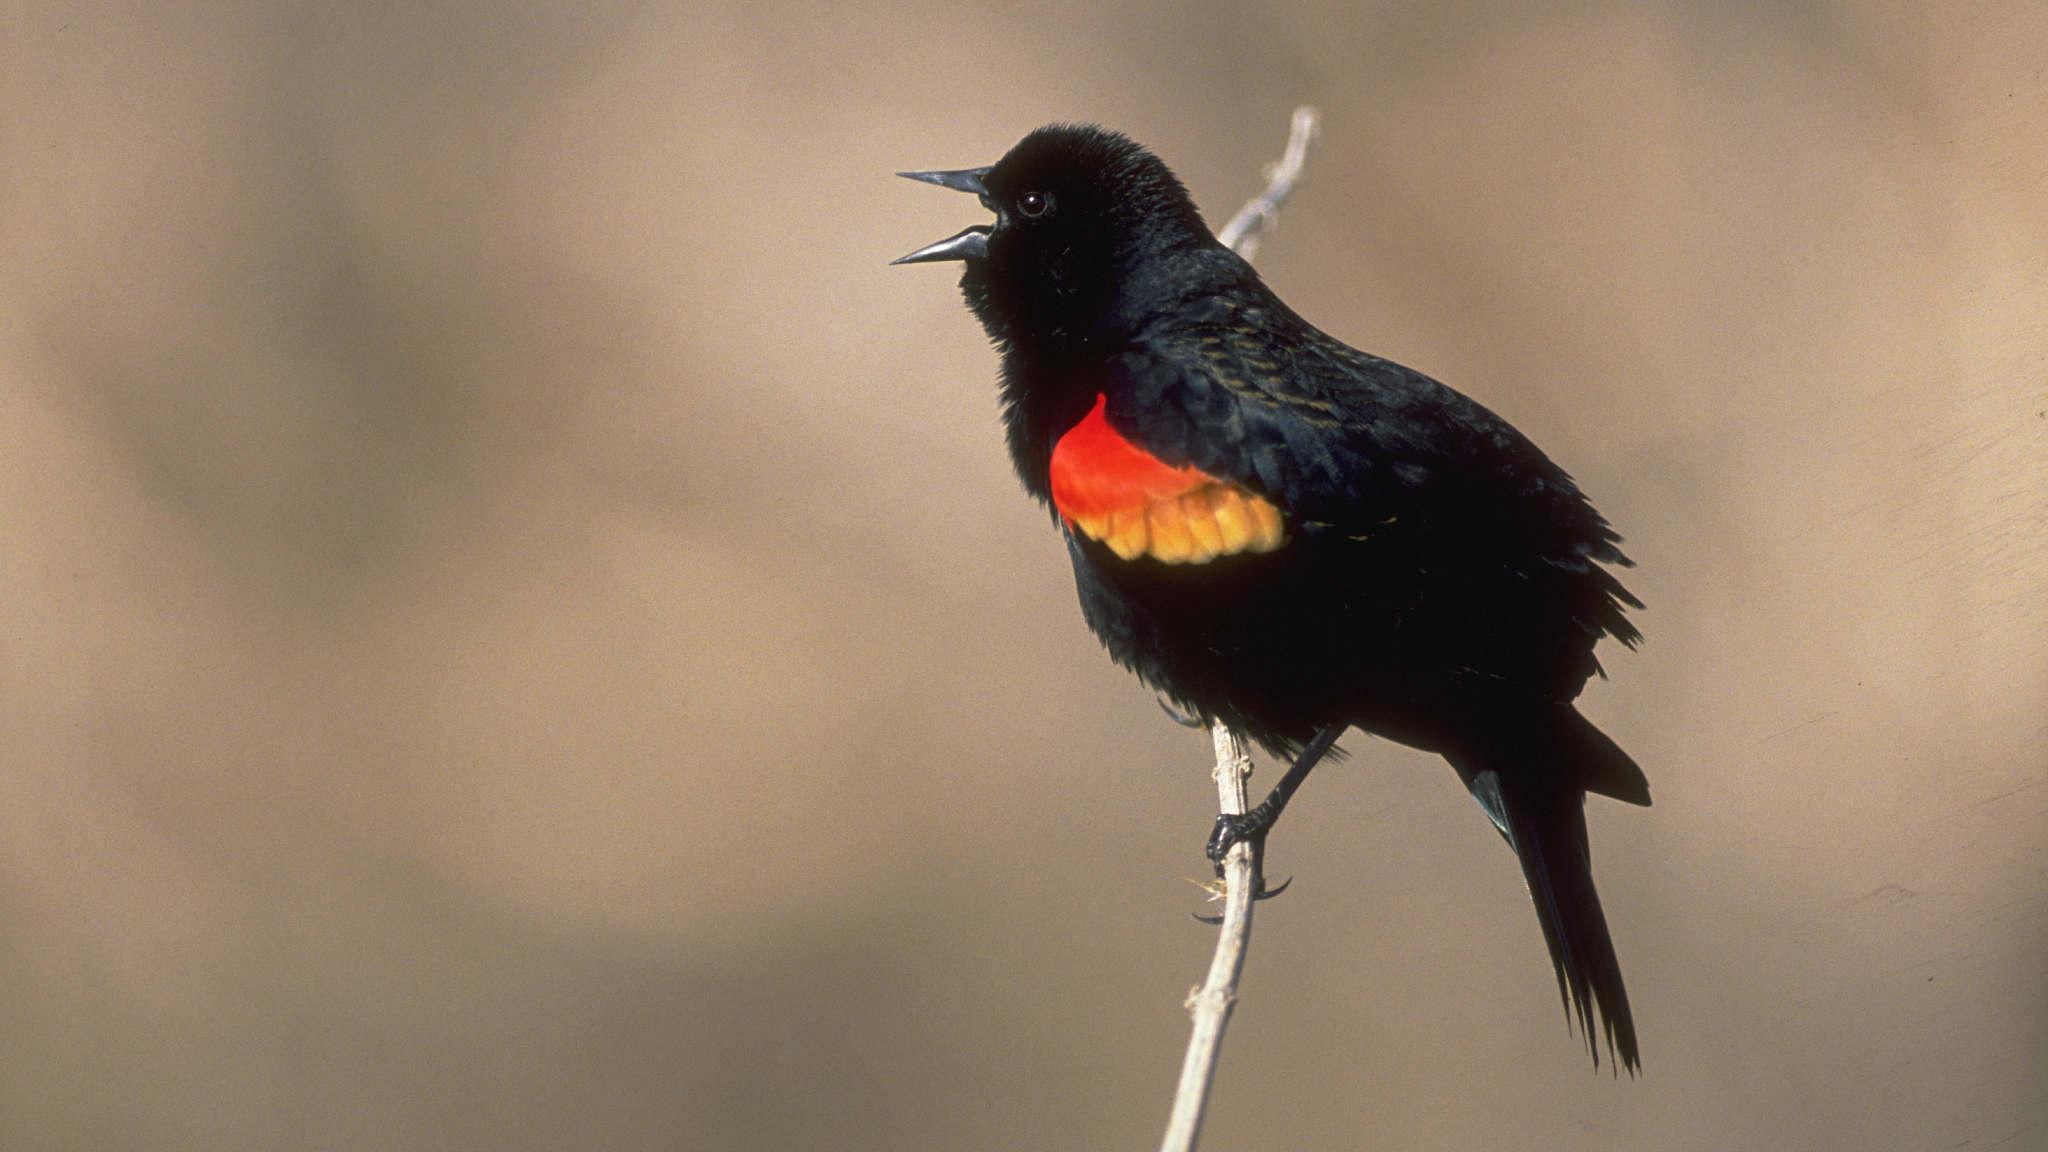 Smoking' Amorous Red Winged Blackbird Captured